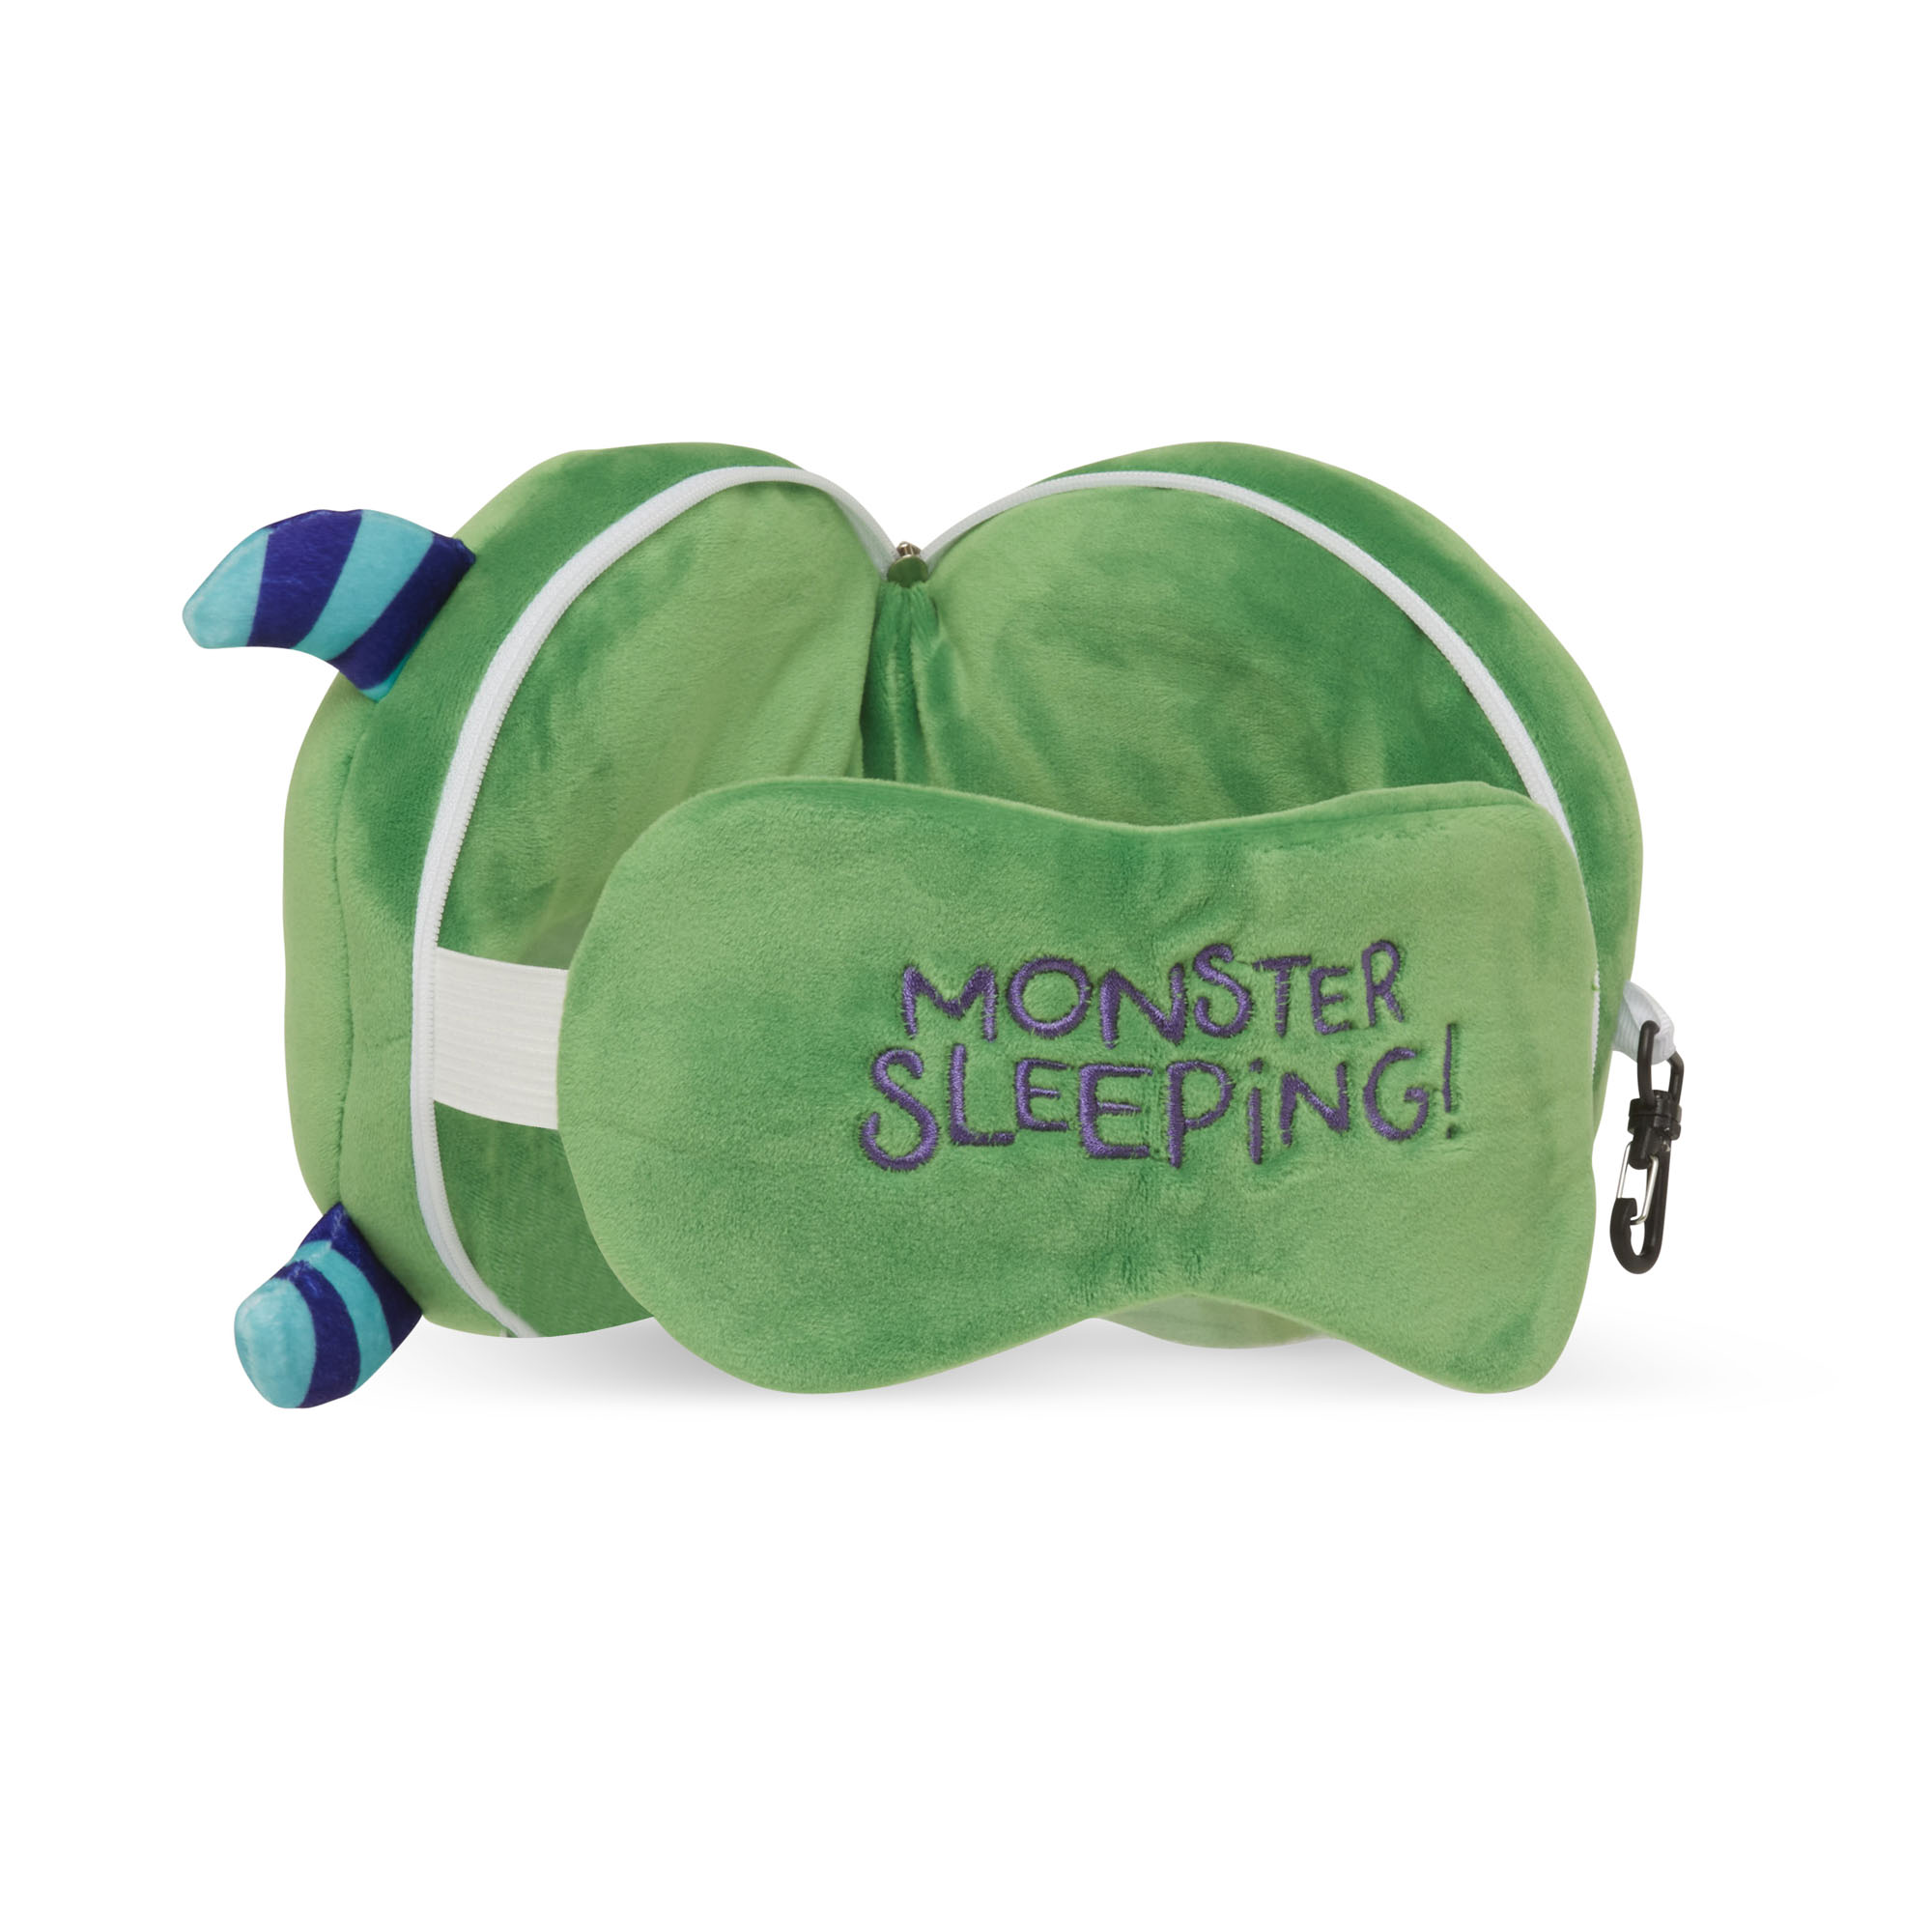 Cuscino da viaggio con maschera per dormire - Mostro verde, , large